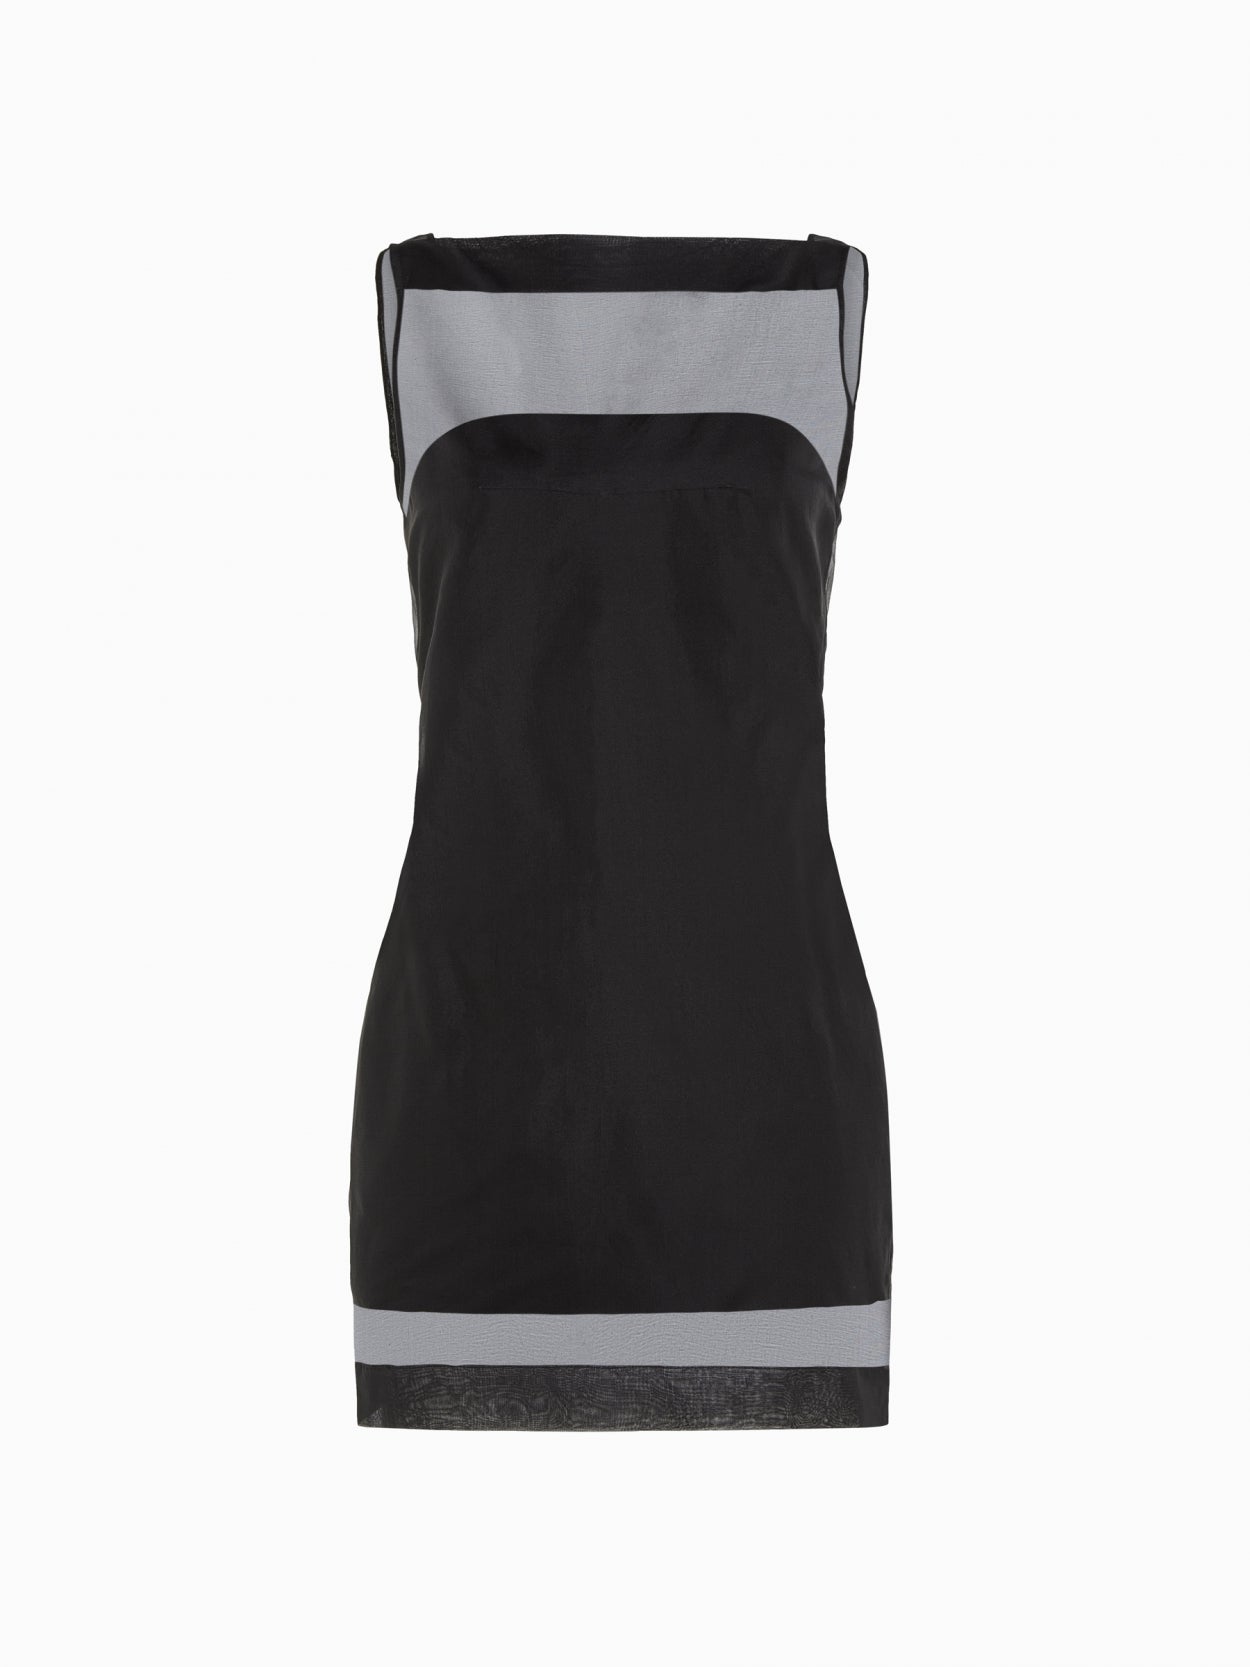 front packshot of a black mesh overlay dress